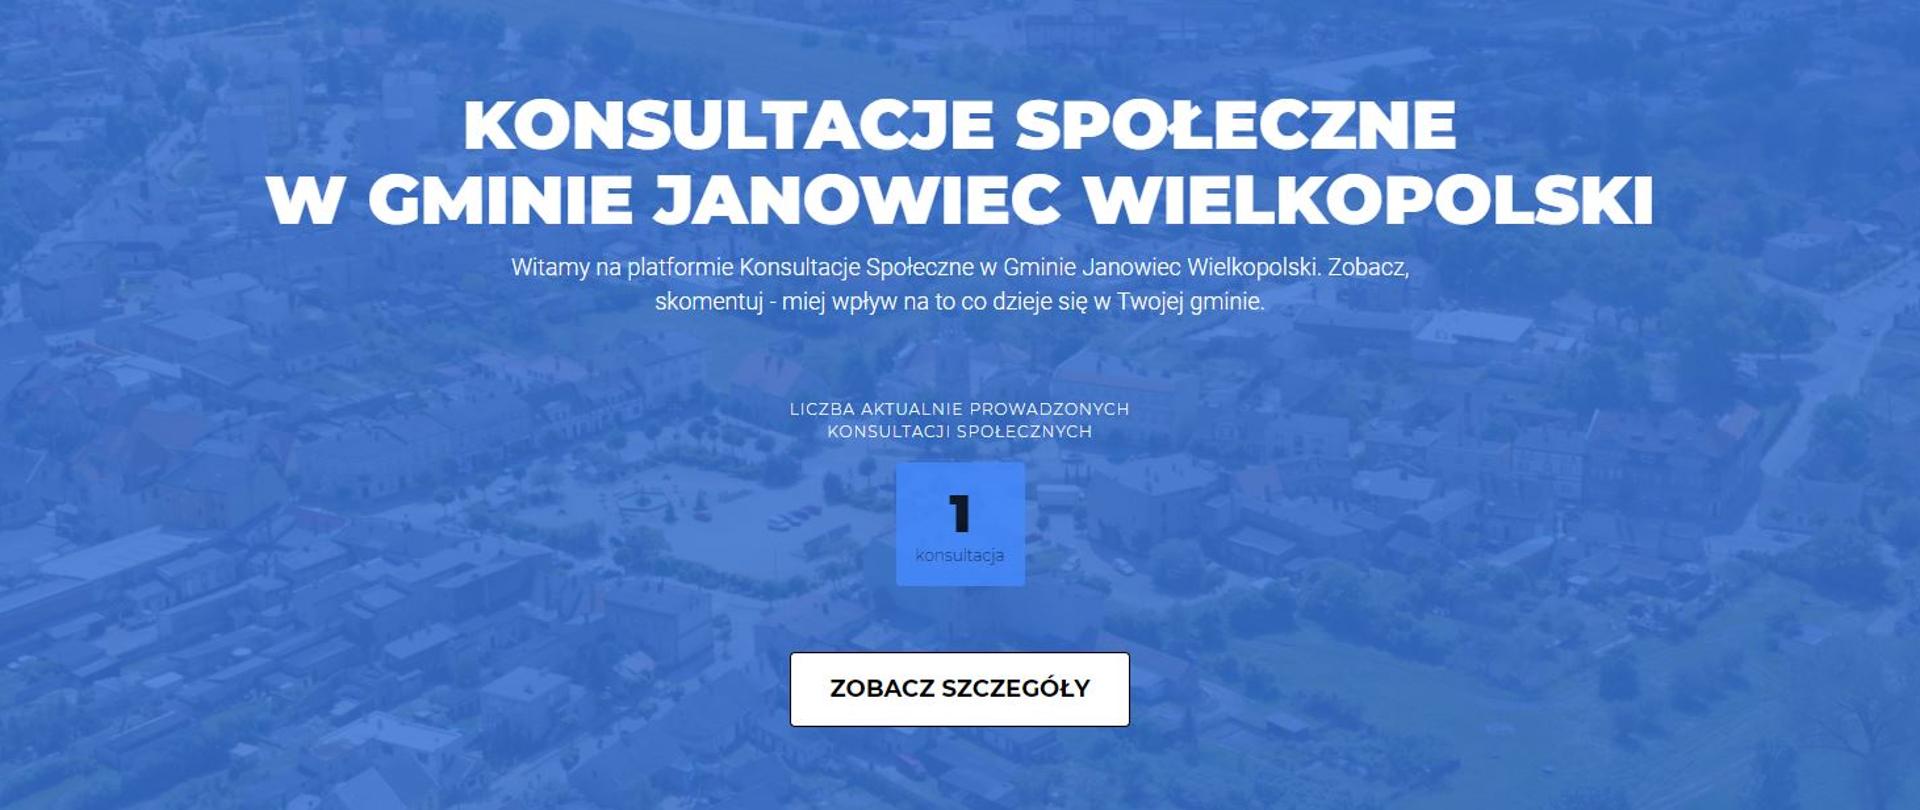 Konsultacje społeczne w gminie Janowiec Wielkopolski